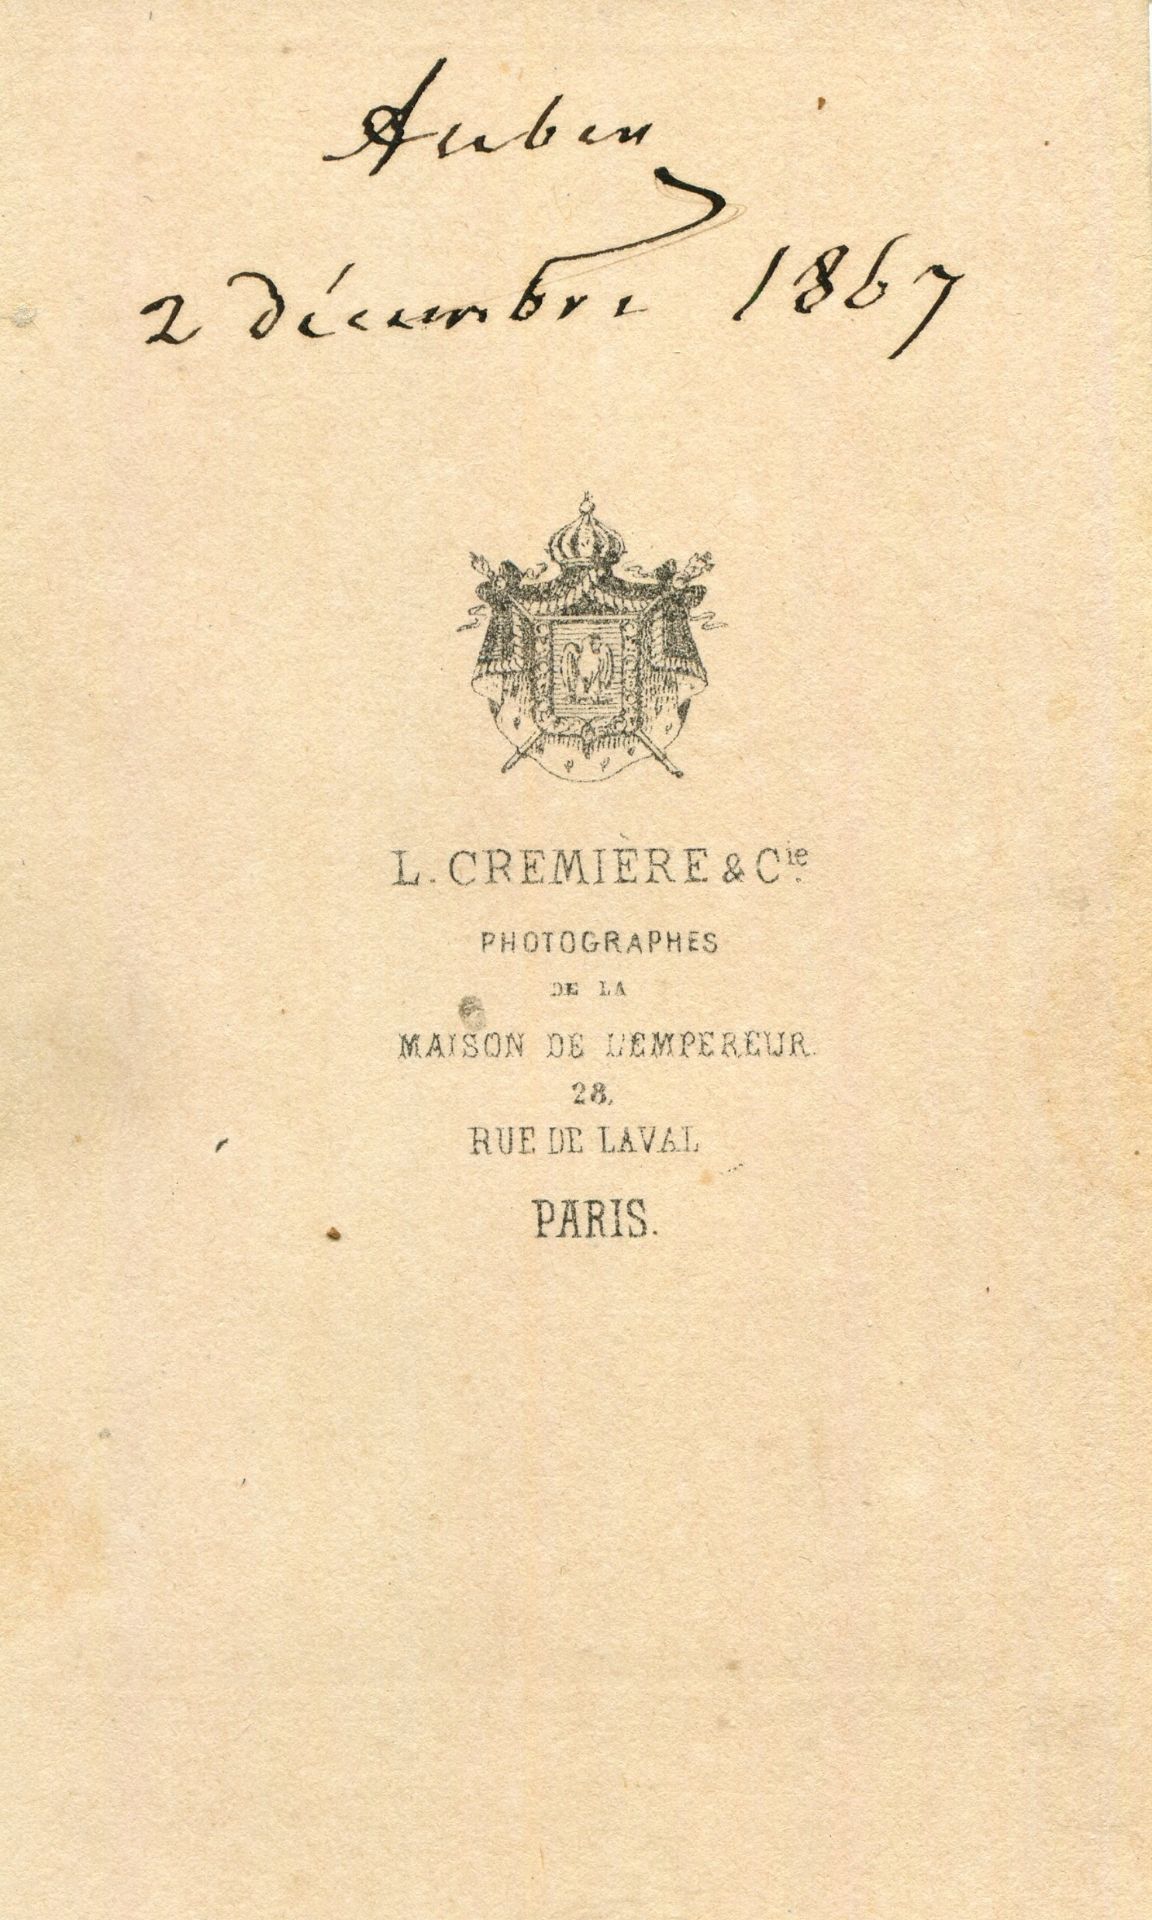 AUBER DANIEL: (1782-1871) French composer. - Bild 2 aus 2